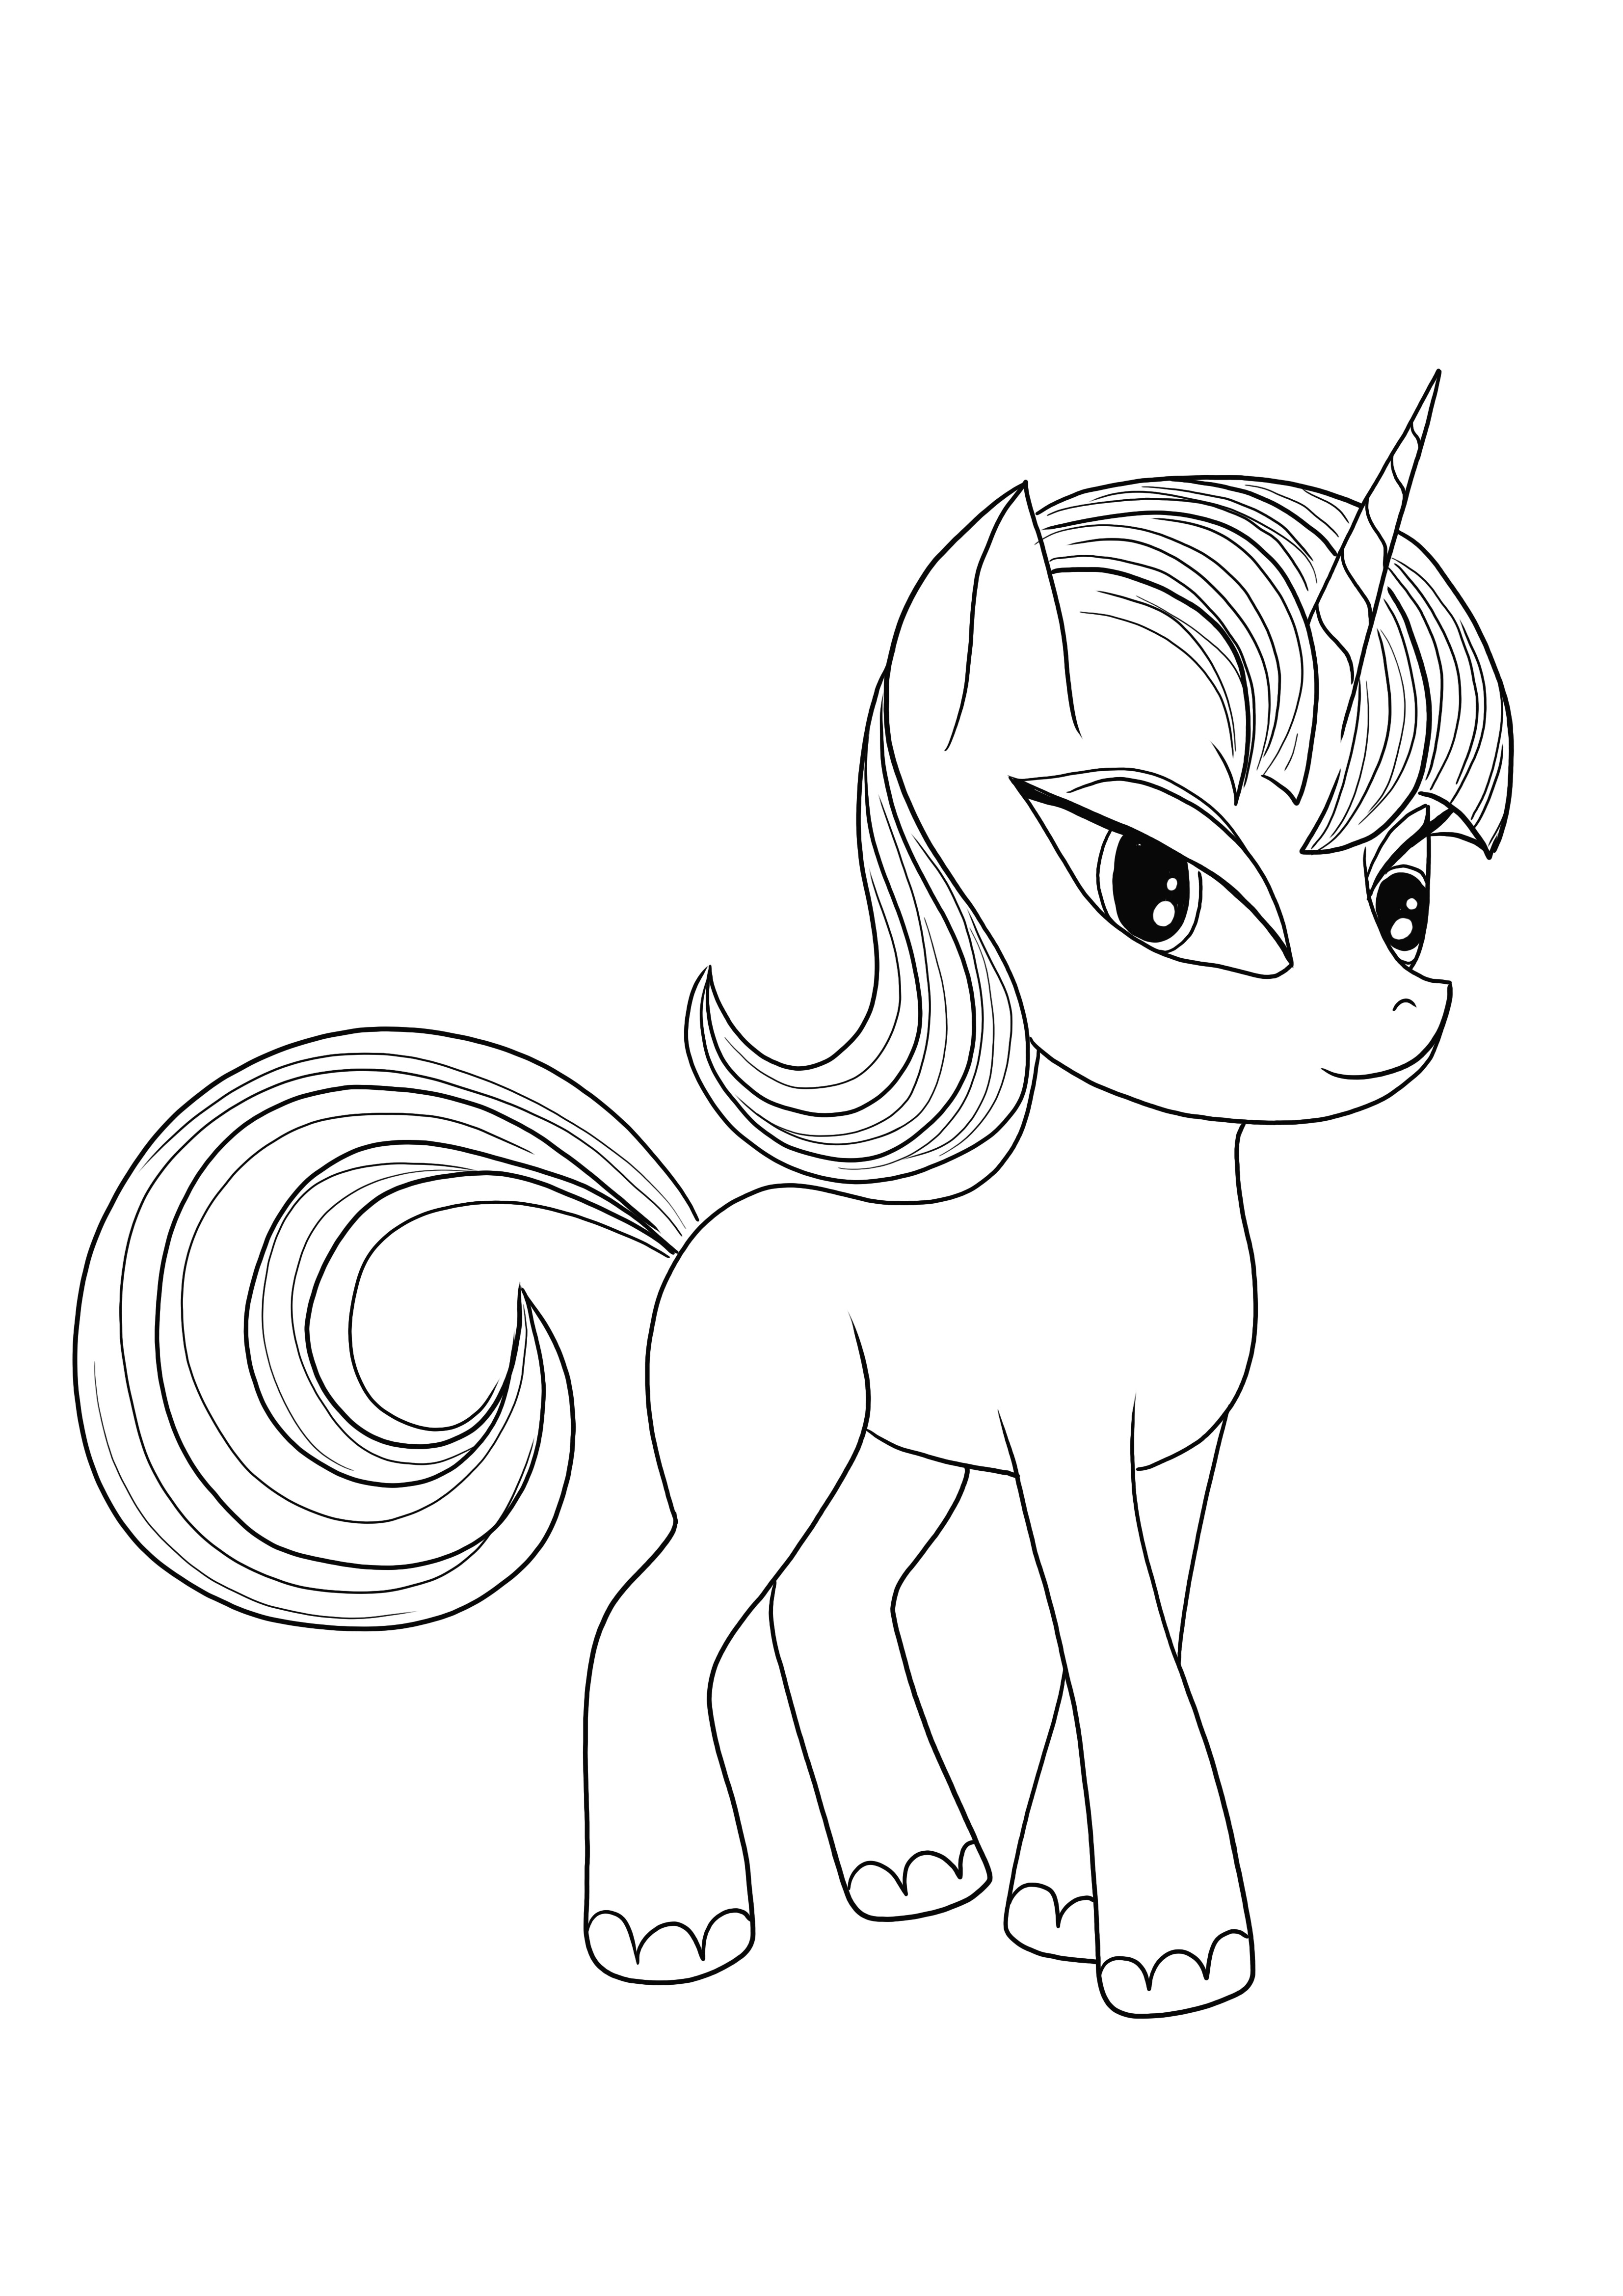 Cute Little Pony Unicorn coloriage et impression gratuits pour les enfants de tous âges